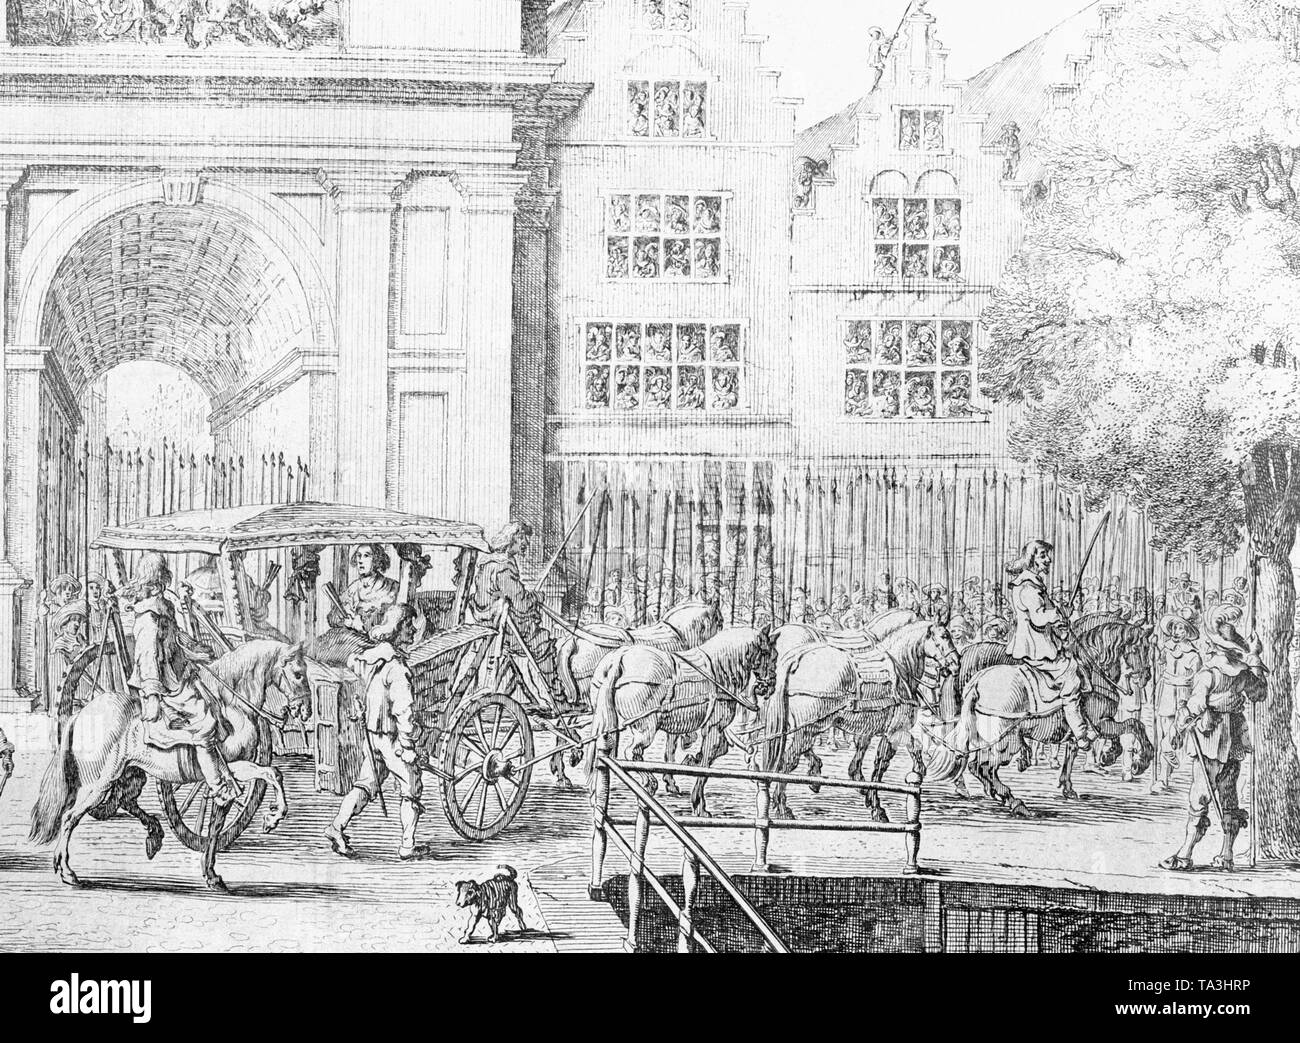 Une dame distinguée entre dans une ville française. Elle est accompagnée par les militaires. Le chariot est tiré par six chevaux. Banque D'Images